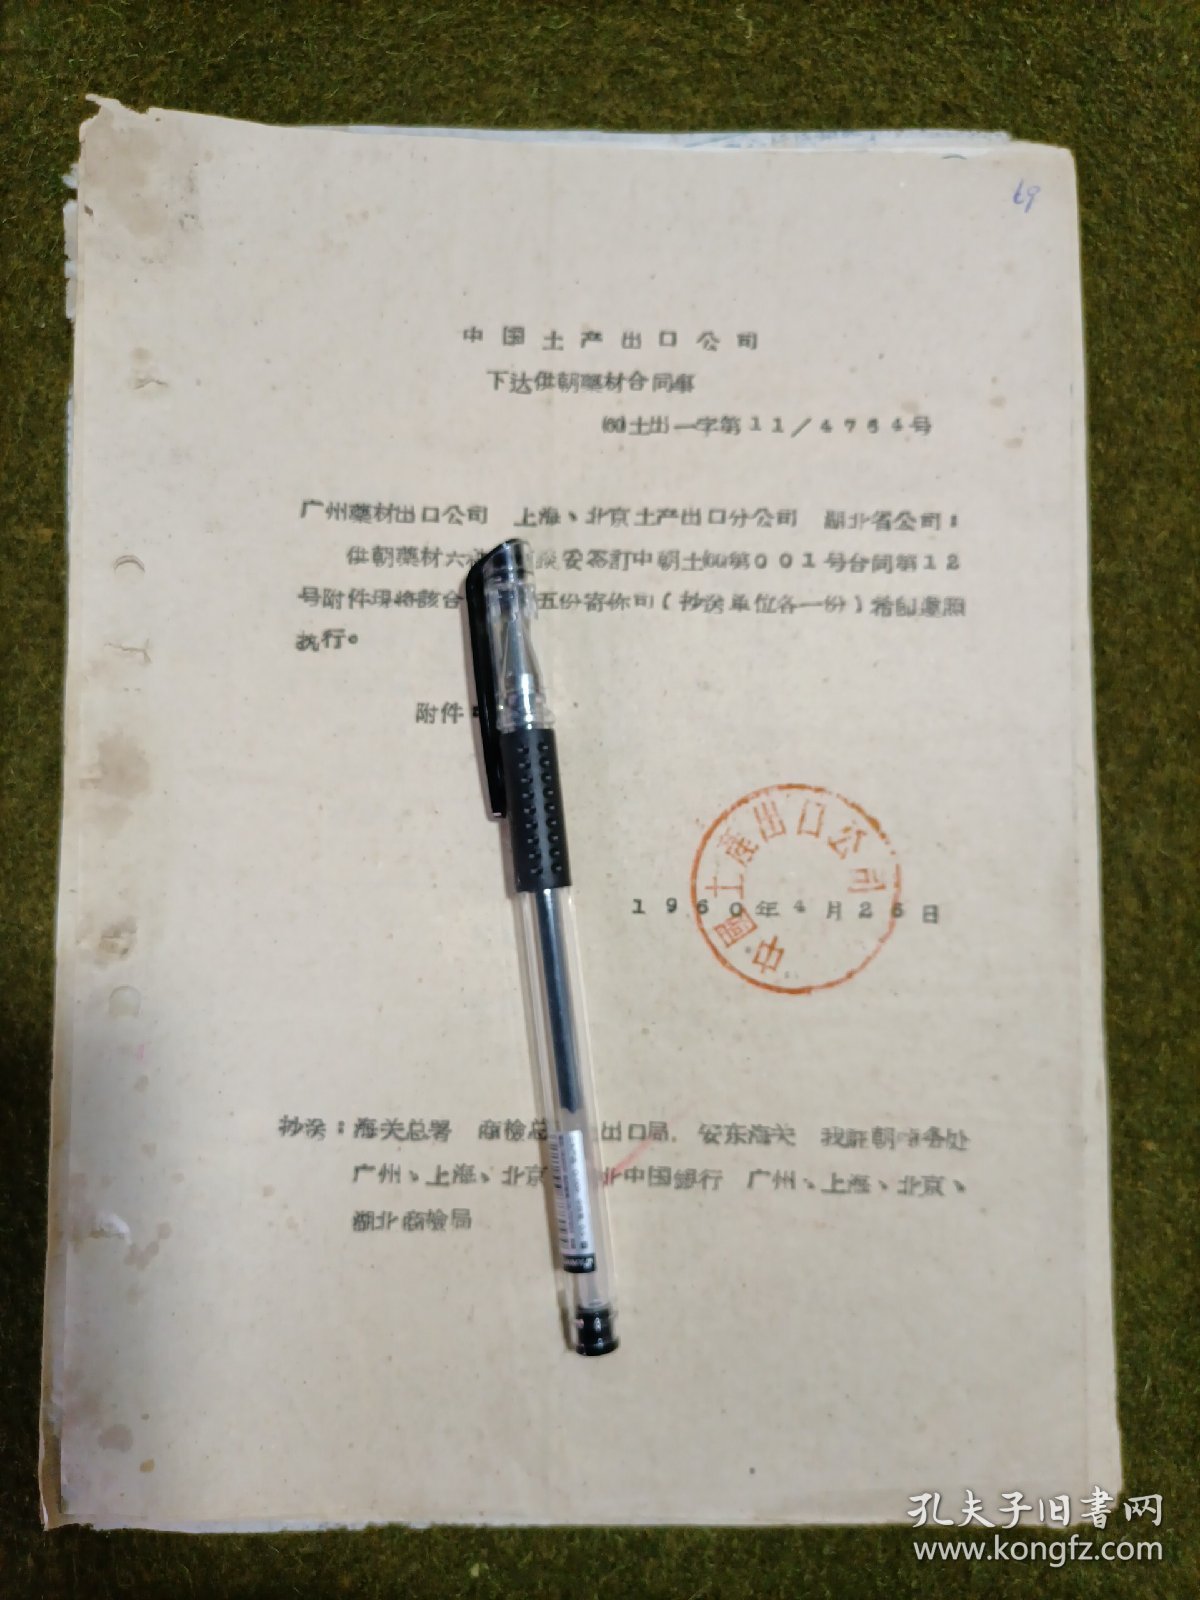 中国土产公司供朝鲜药材、生漆、皮胶合同及附件 1960年